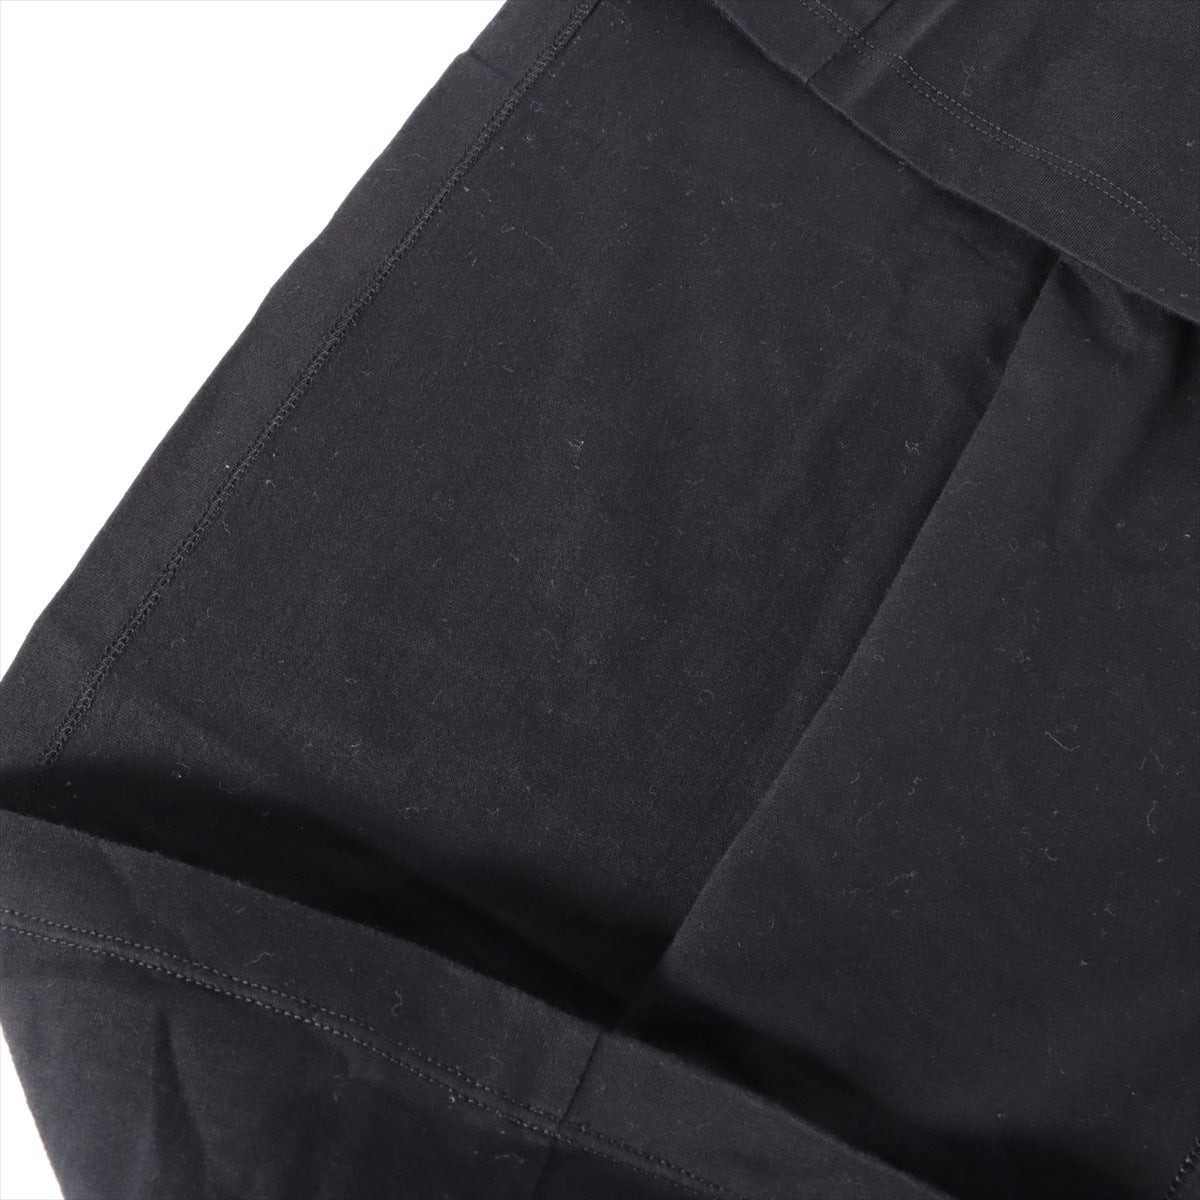 モンクレール 22年 コットン Tシャツ XL メンズ ブラック  MAGLIA I209P8C00002 品質タグほつれ